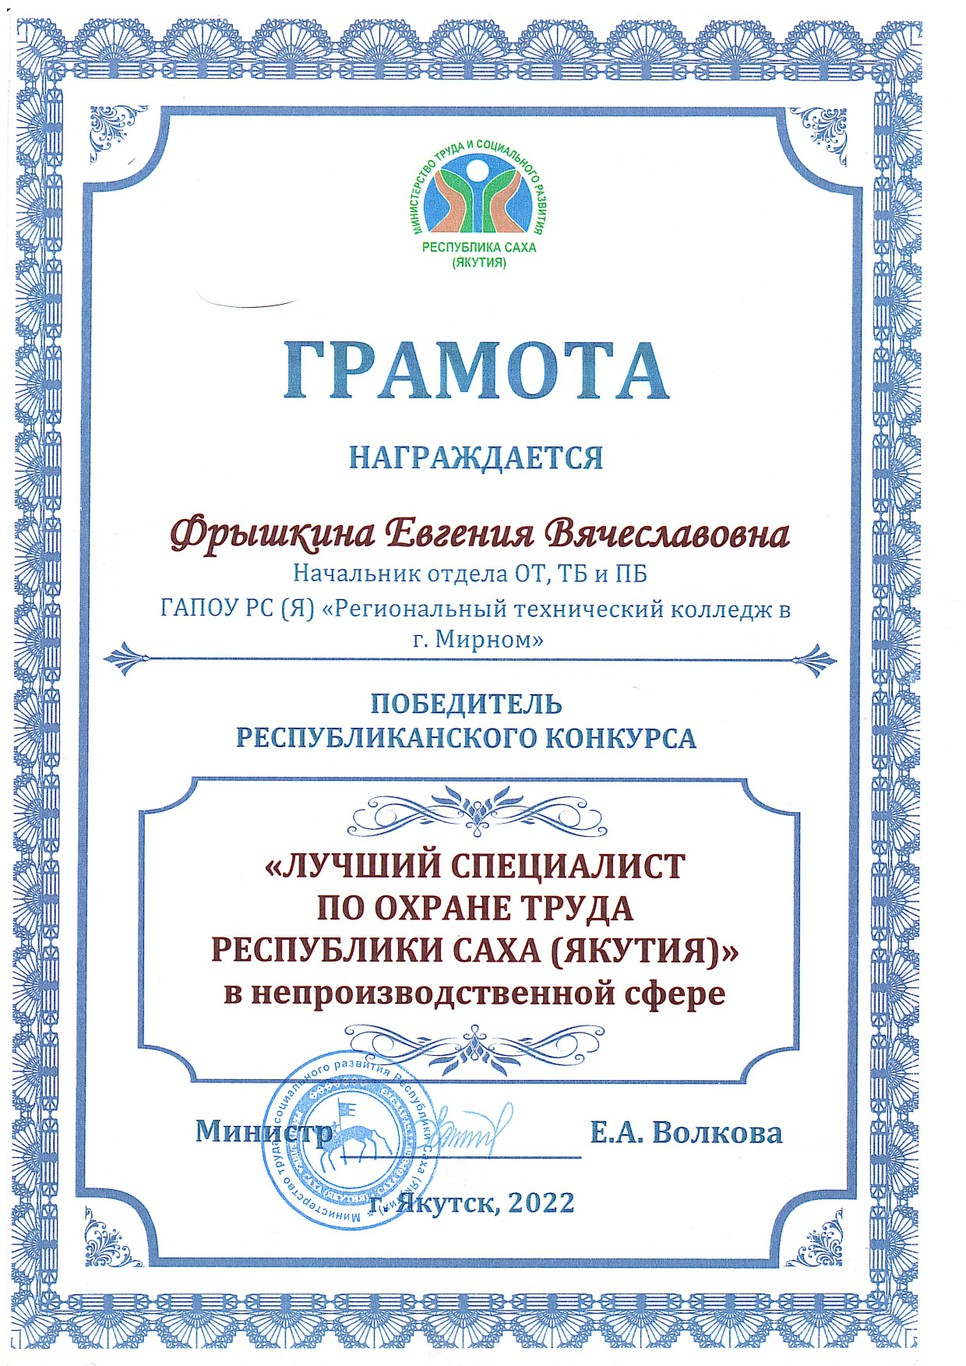 Министерство труда и социального развития РС (Я) наградило победителя республиканского конкурса "Лучший специалист по охране труда".